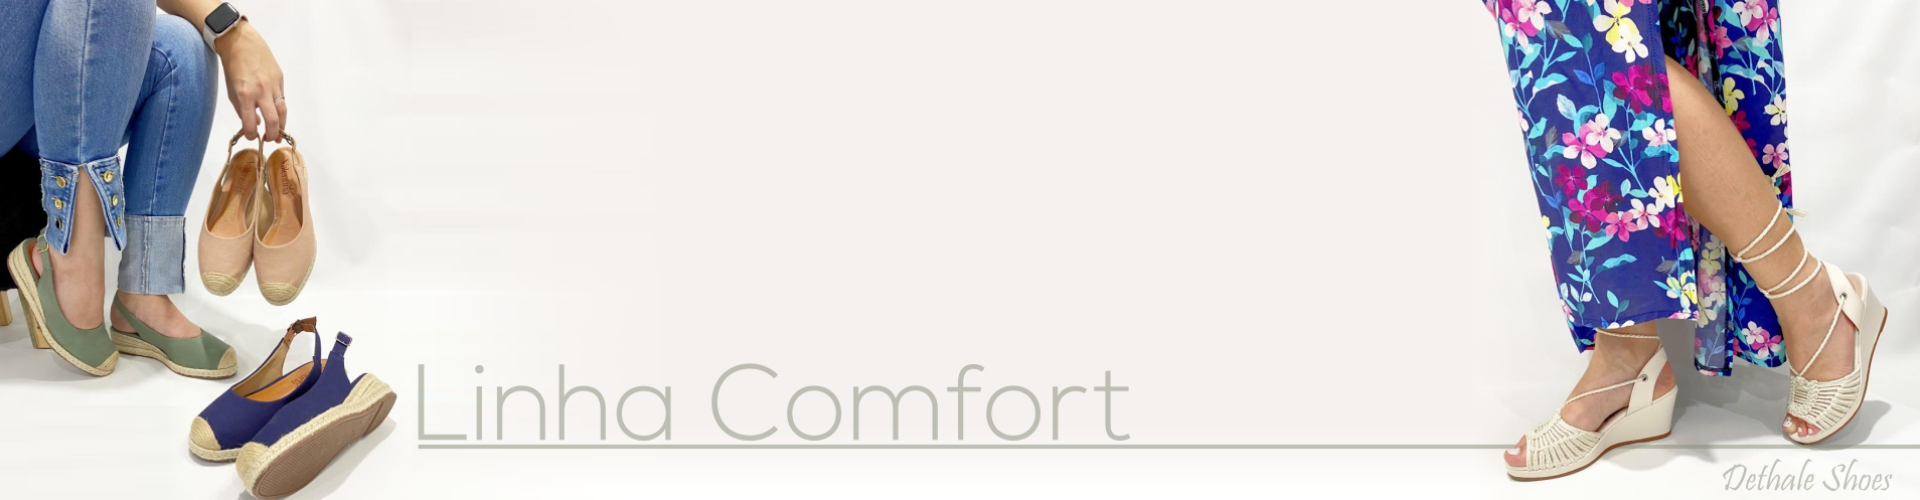 banner Linha comfort